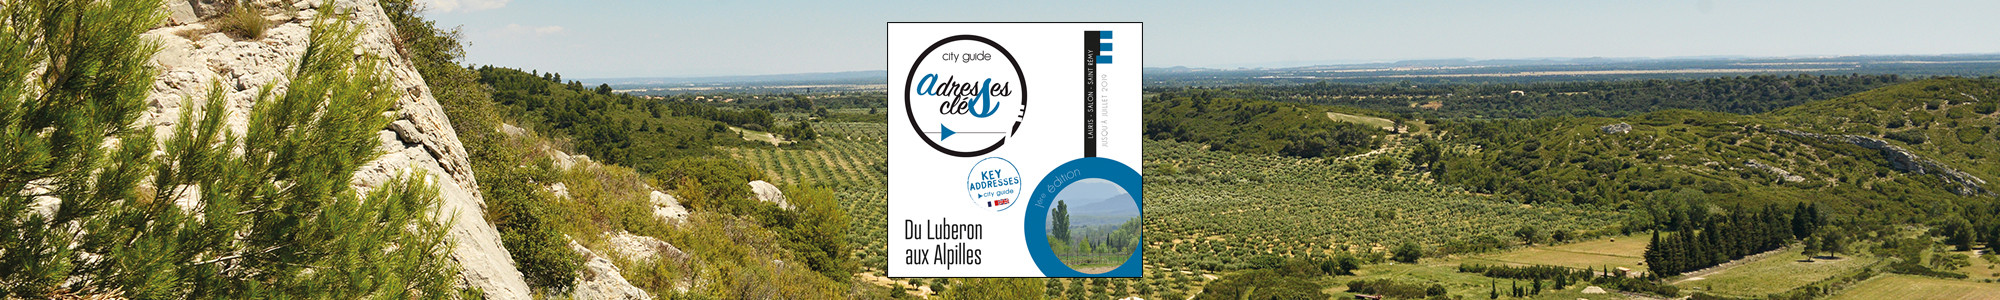 Adresses Clés Luberon- Salon-de-Provence - Alpilles